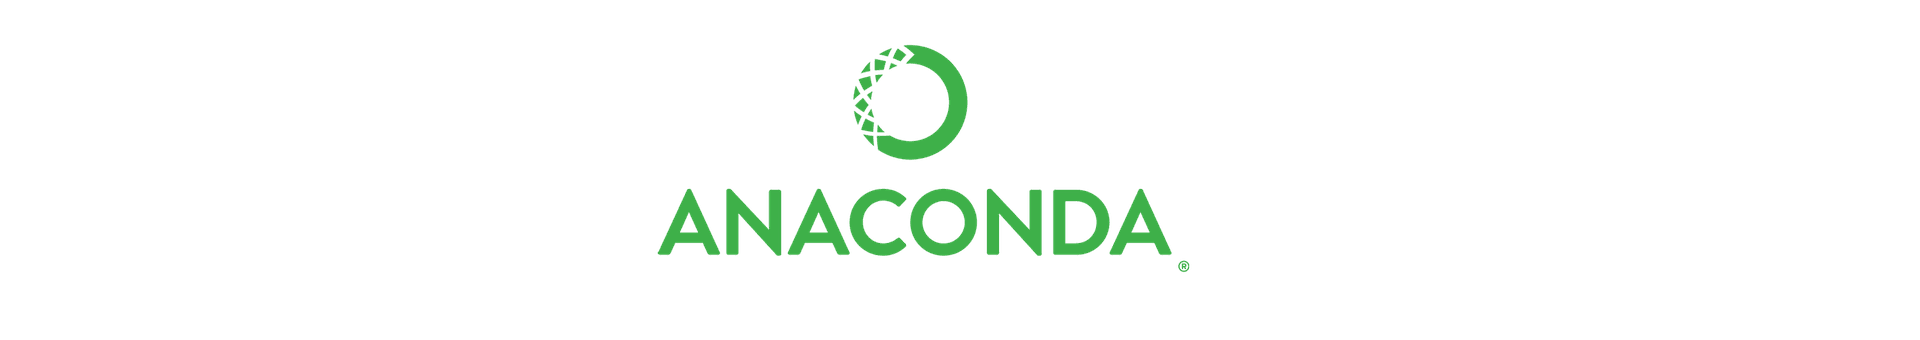 anaconda logo transparent 